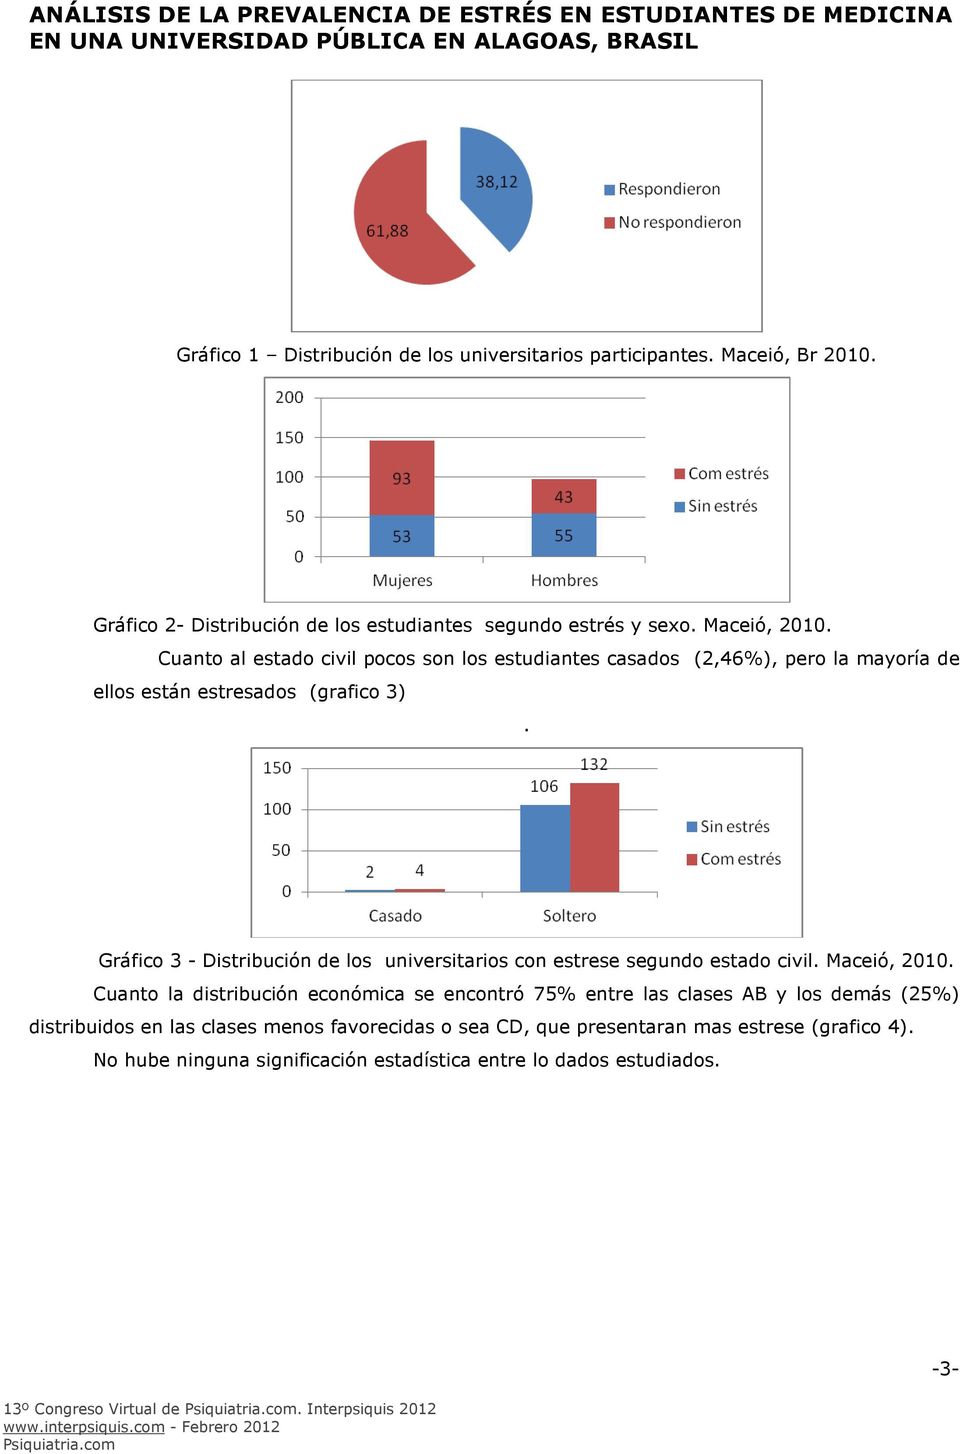 Gráfico 3 - Distribución de los universitarios con estrese segundo estado civil. Maceió, 2010.